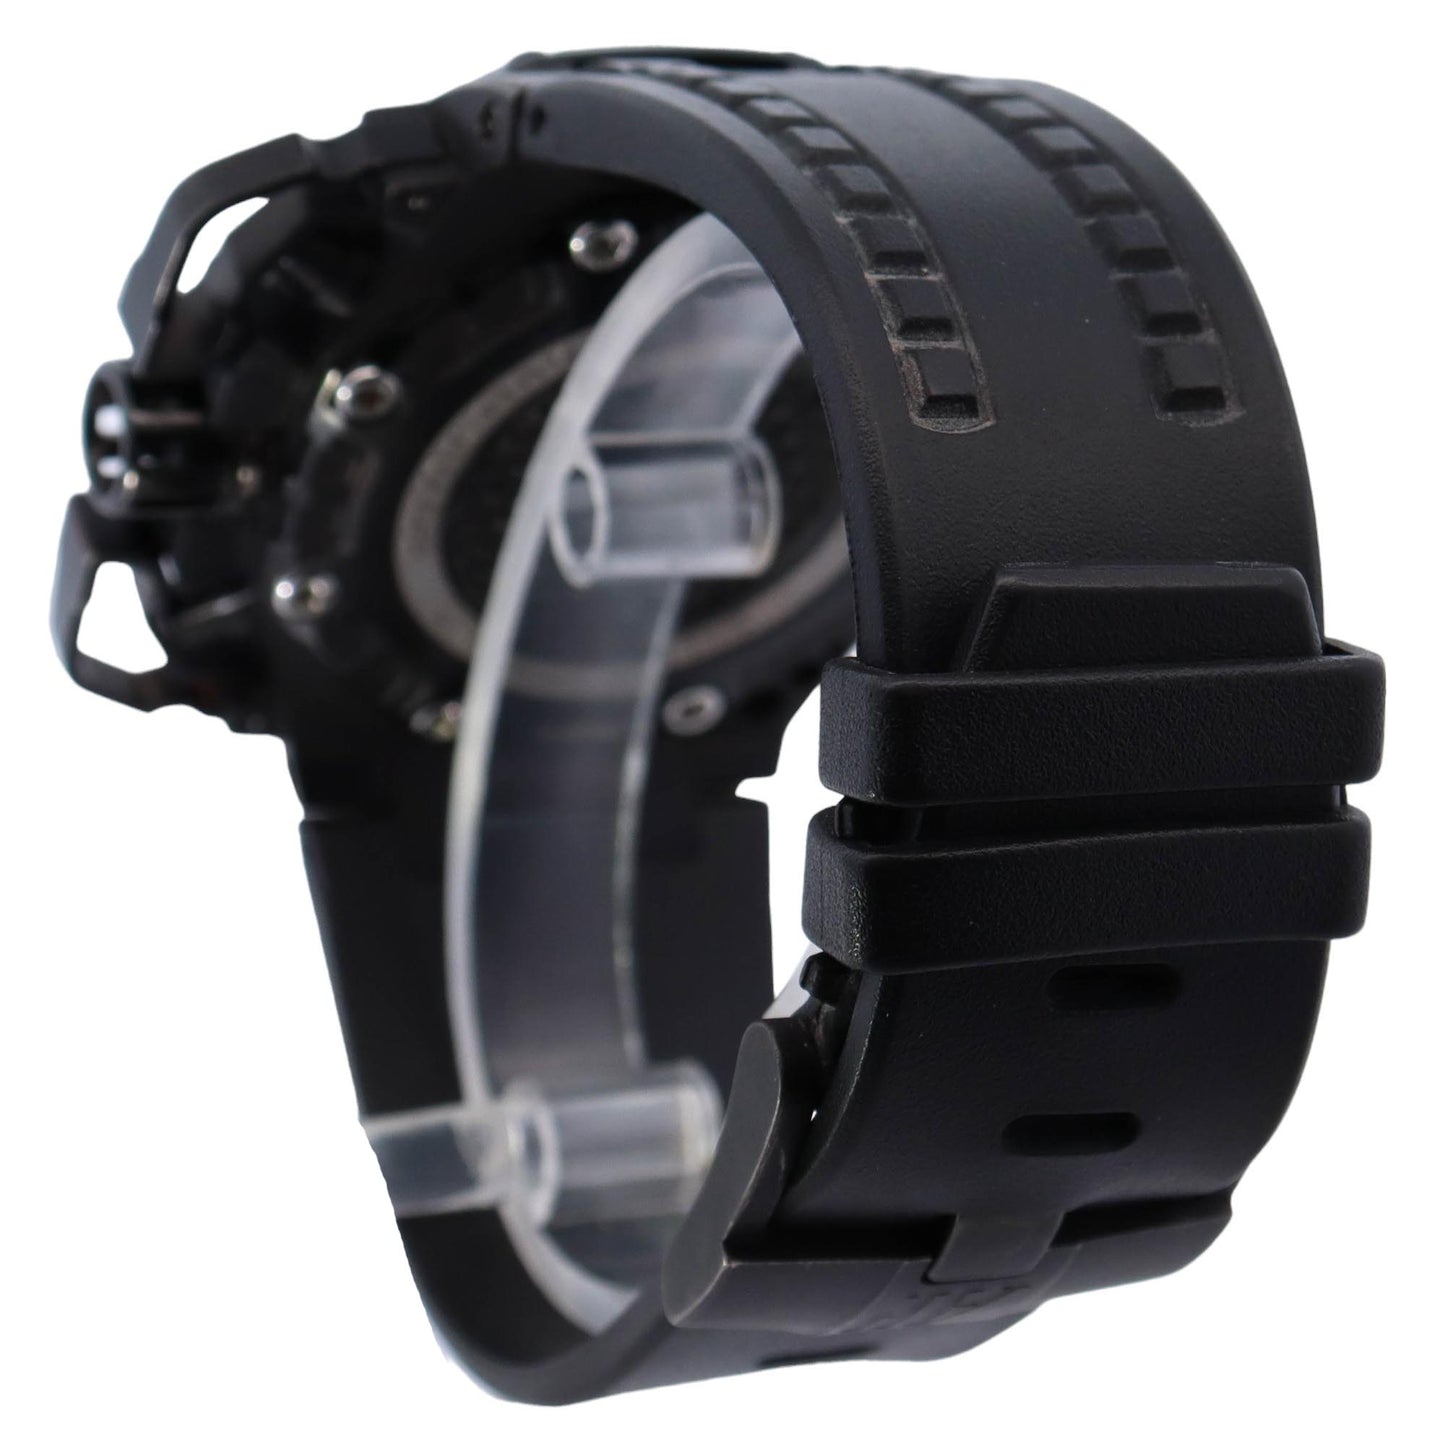 Audemars Piguet Royal Oak Offshore "Survivor" Titanium 42mm Black Chronograph Dial Watch Reference# 26165IO.OO.A002CA.01